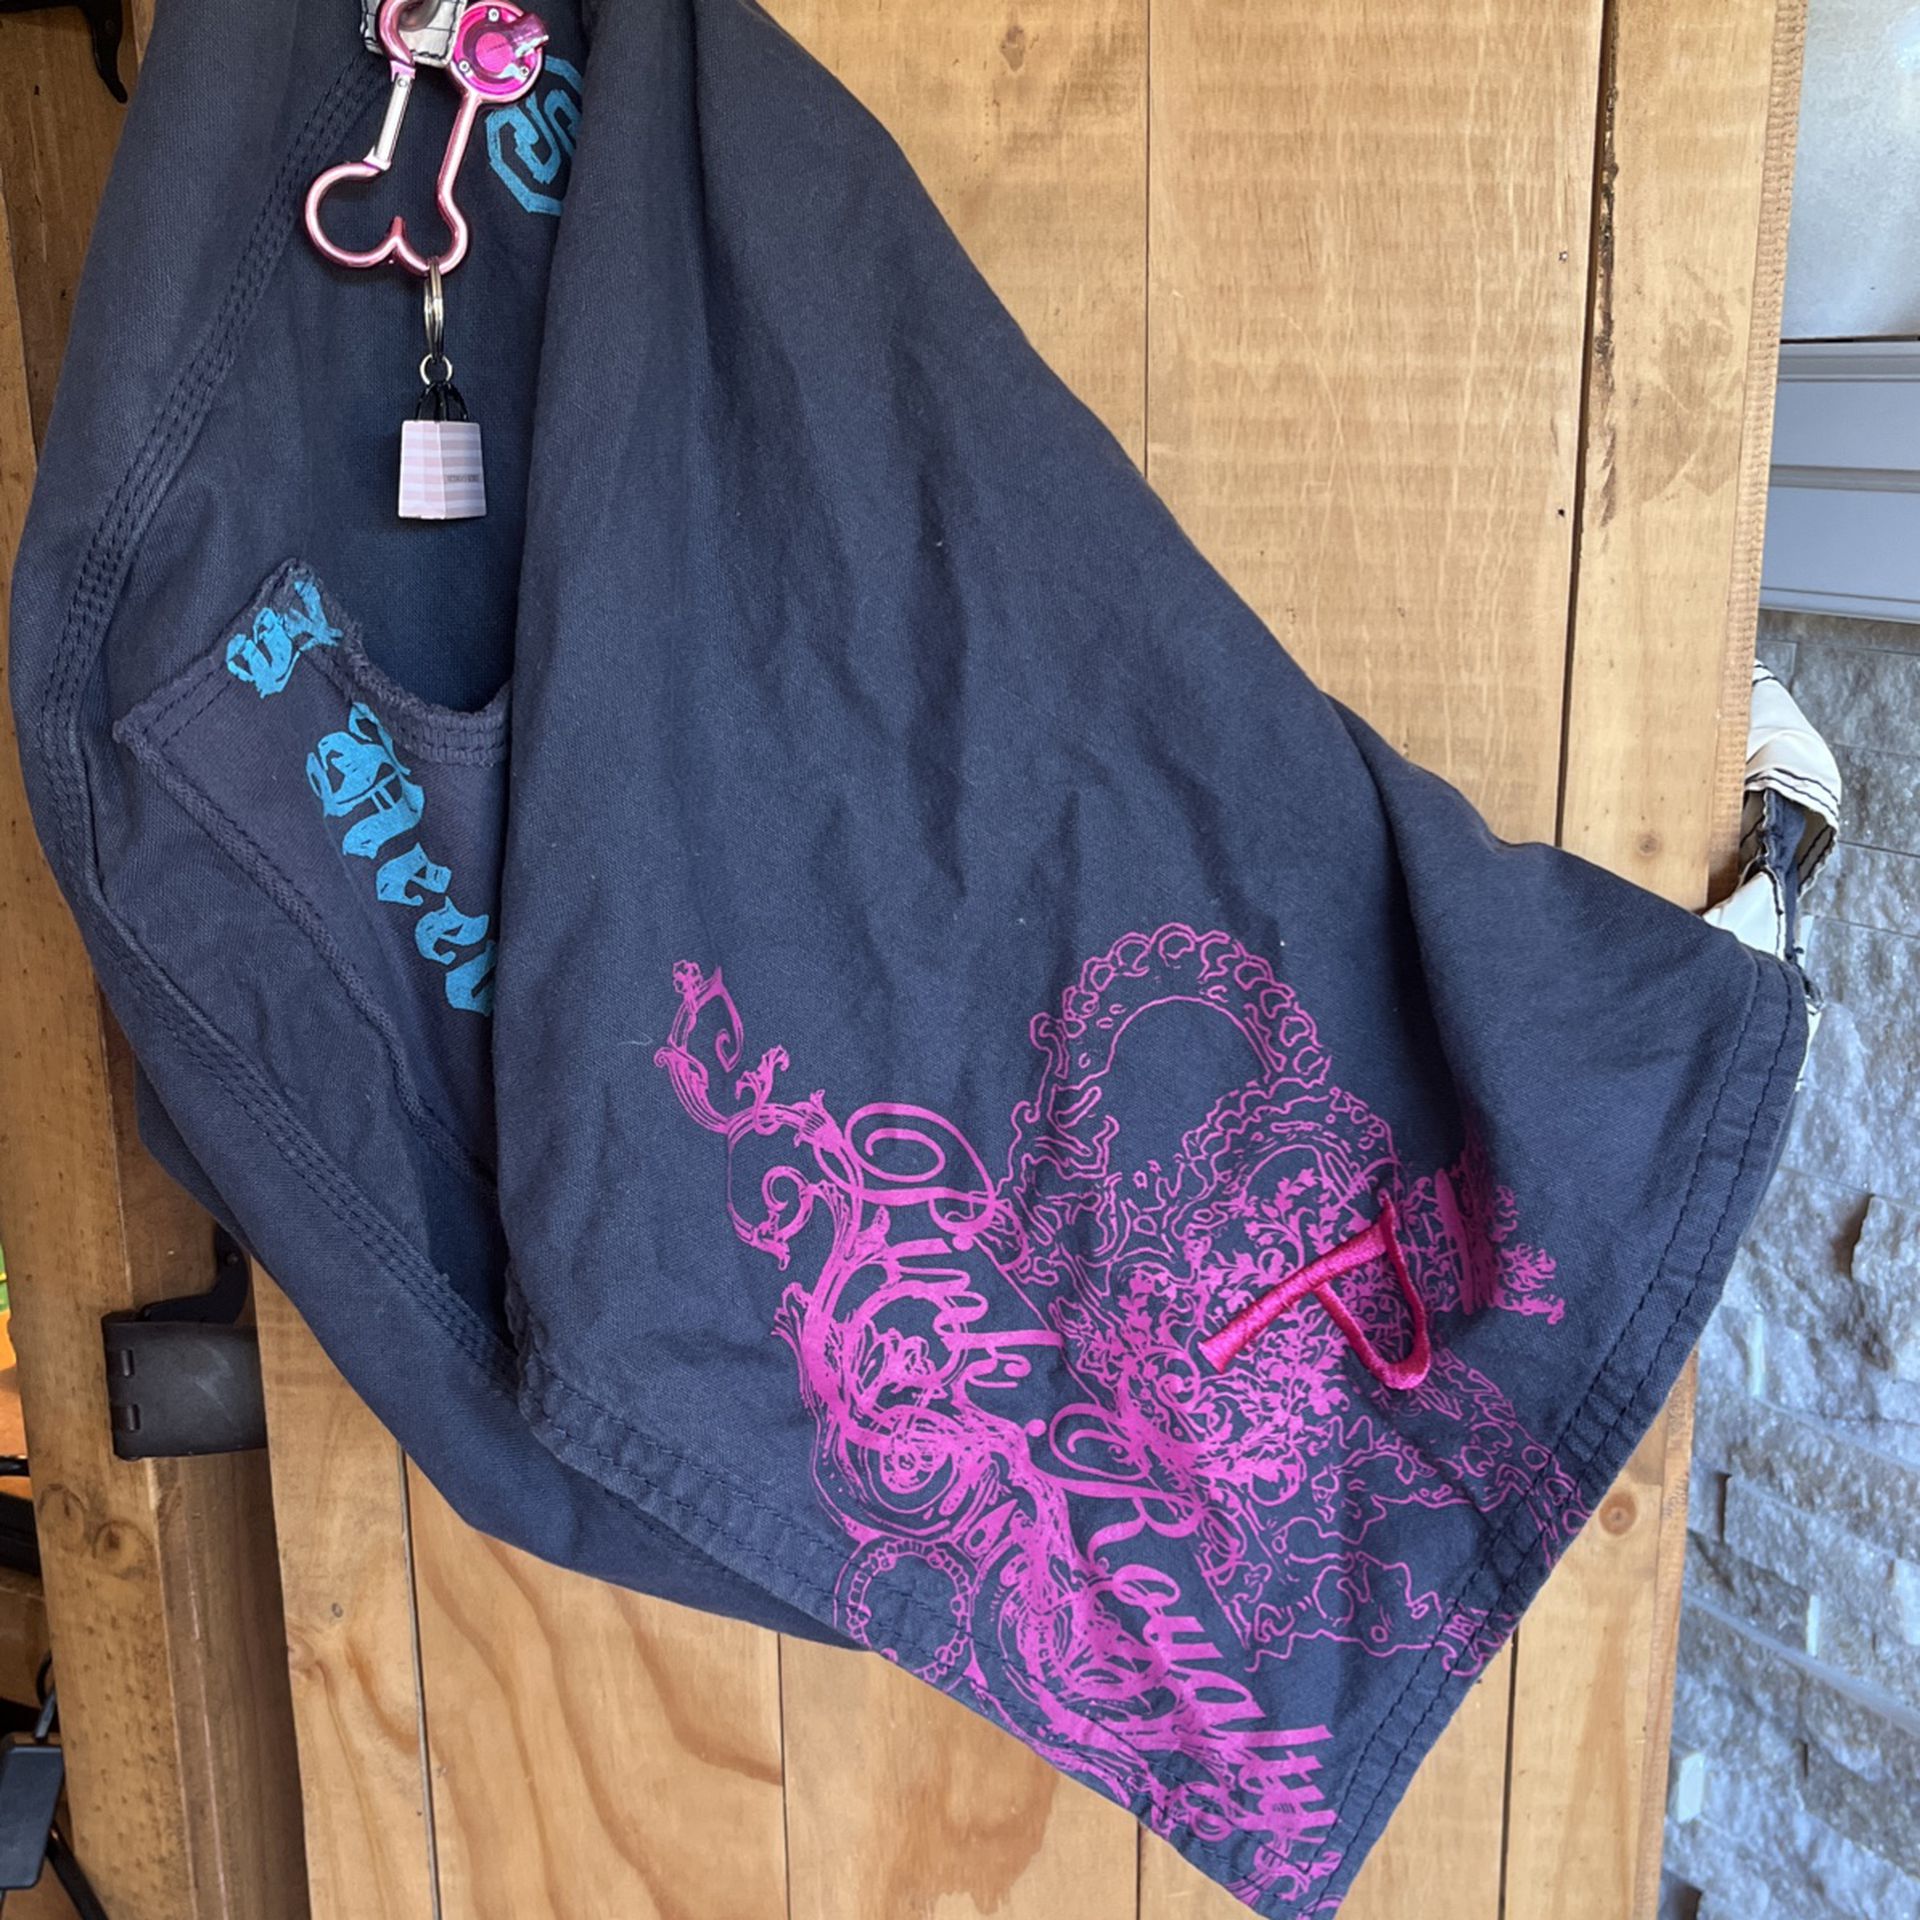 Victoria’s Secret Pink Messenger Bag